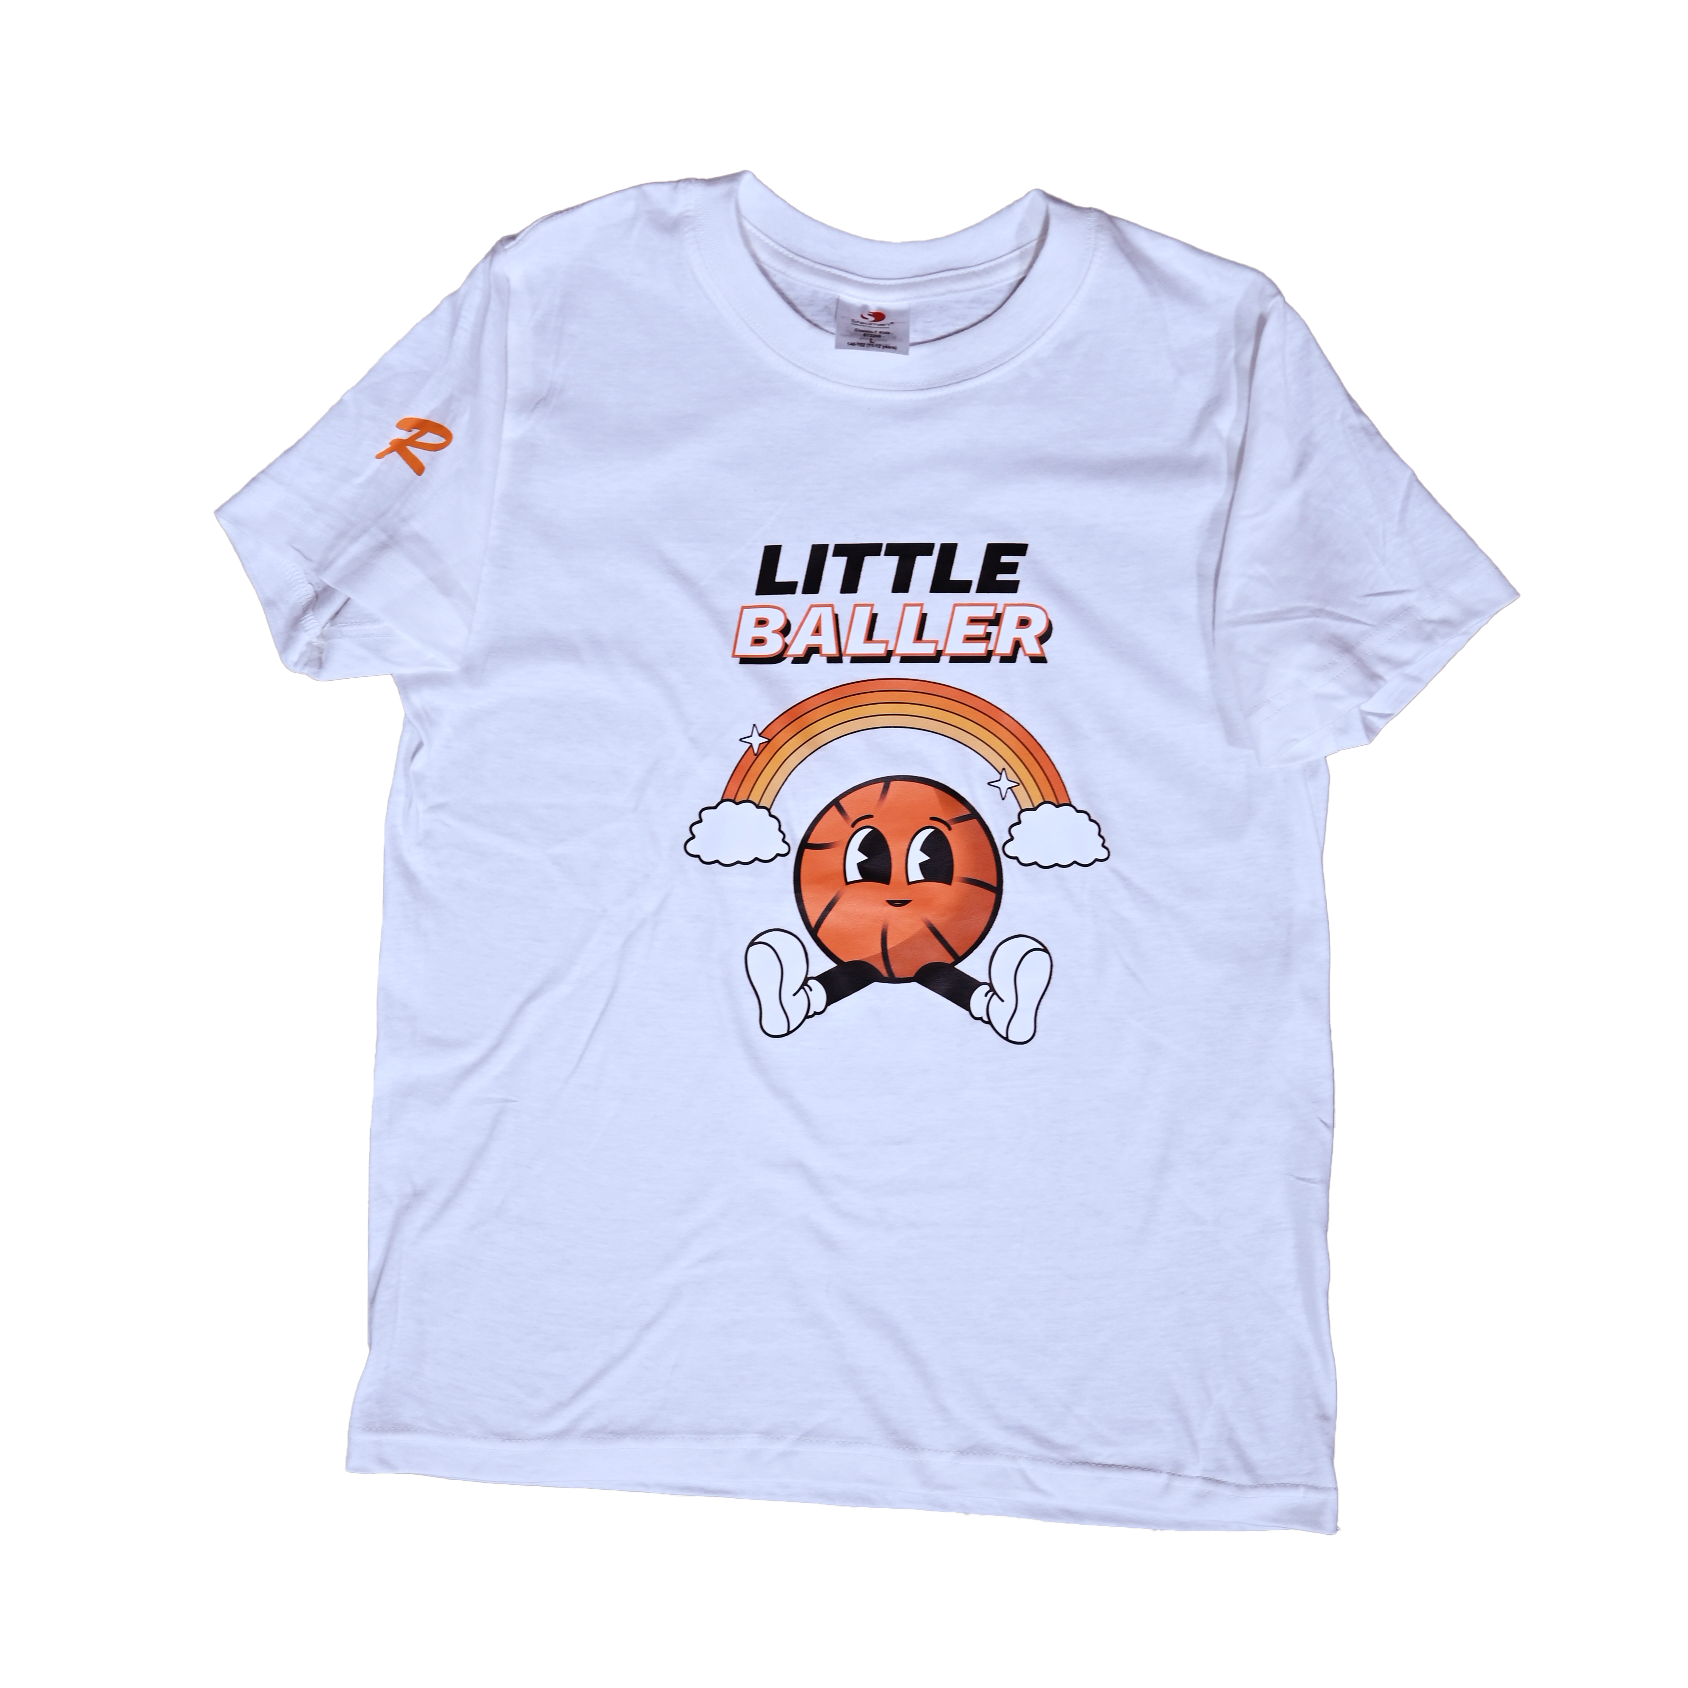 Kids T-Shirt "Little Baller"